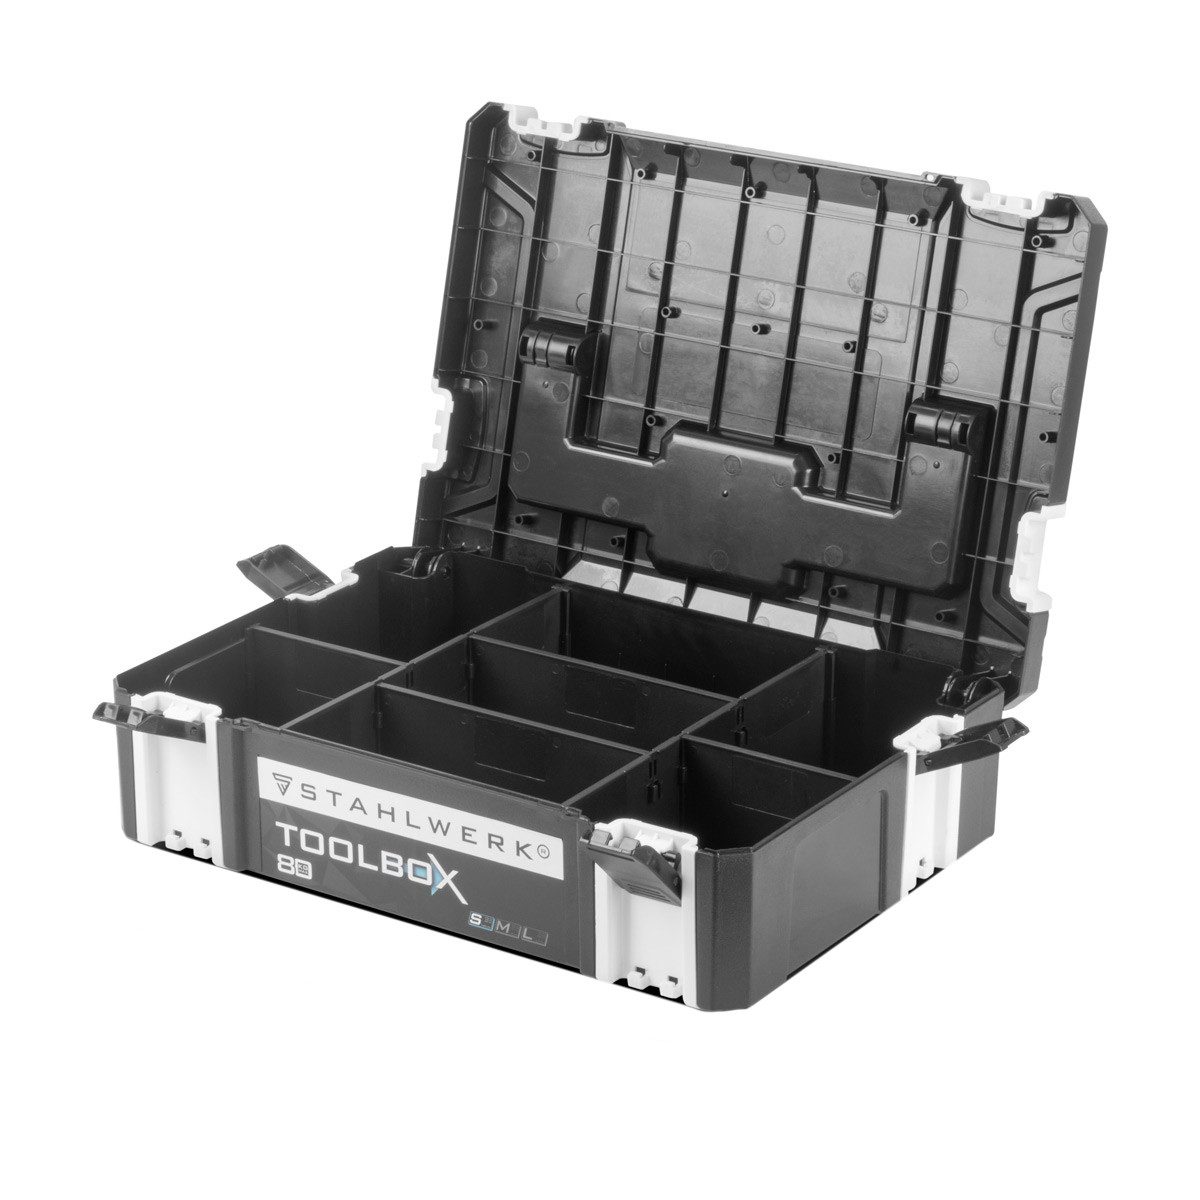 STAHLWERK Werkzeugbox Toolbox mit Innenfach Größe S 443 x 310 x 128 mm, stapelbare Systembox, Werkzeugkiste, Werkzeug-Organizer